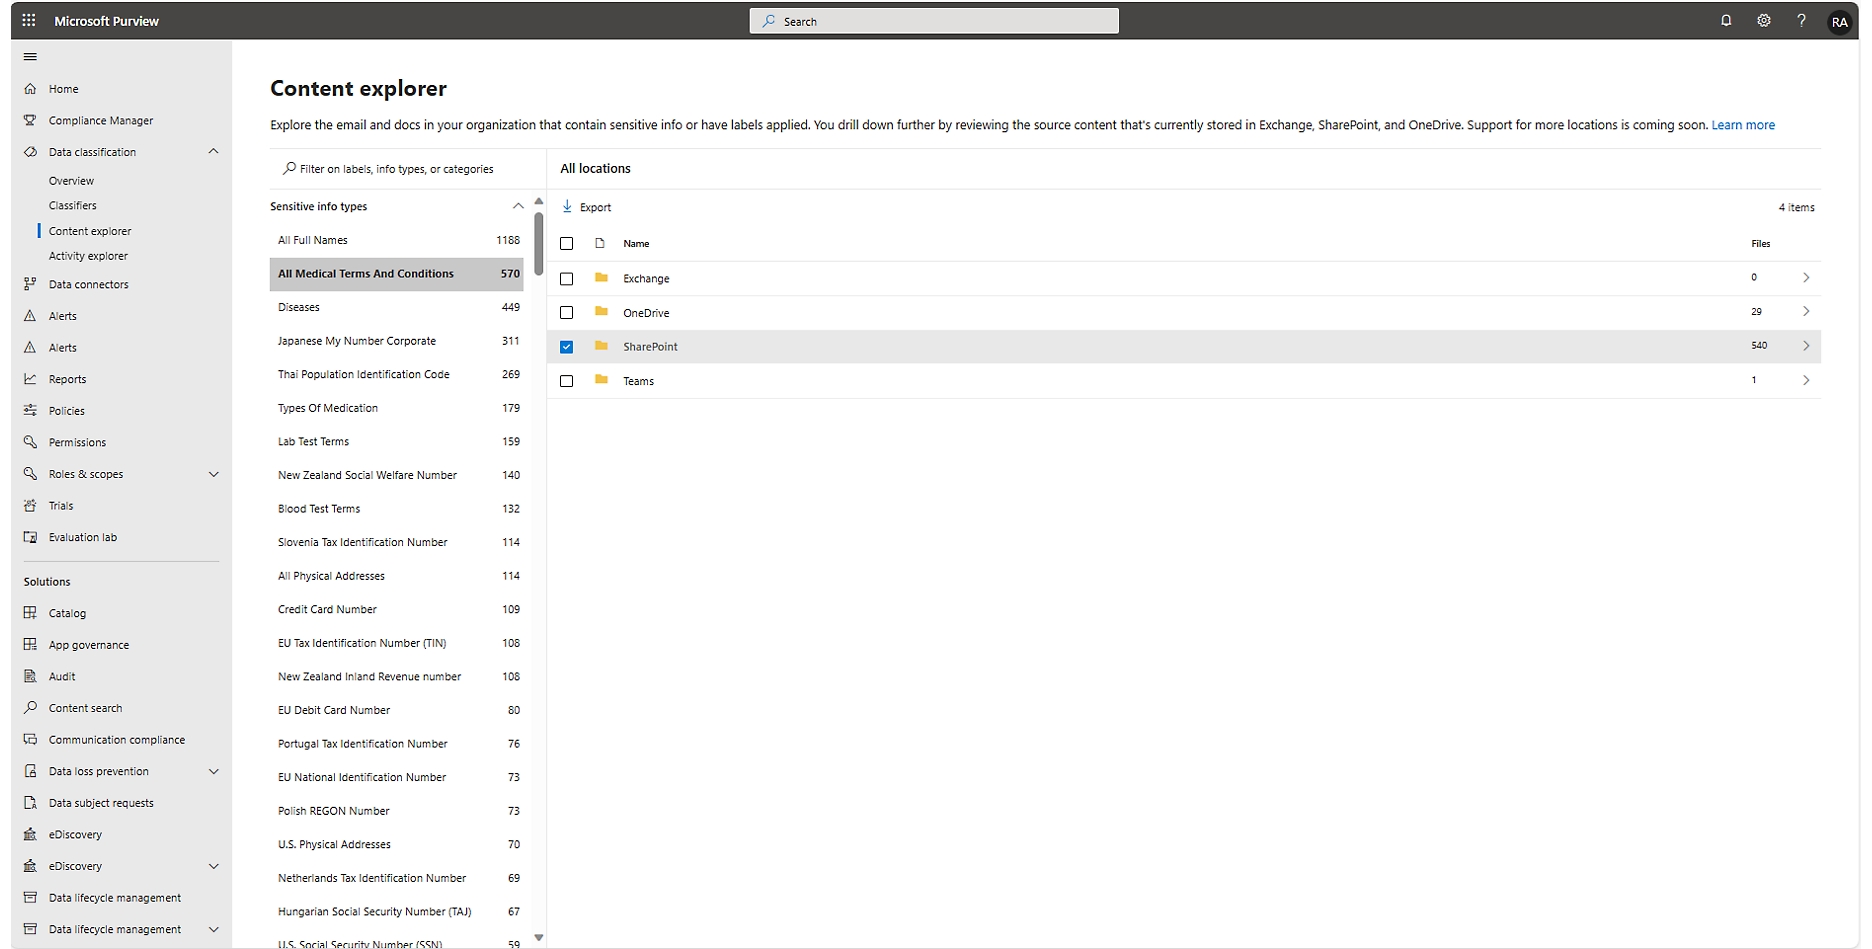 Microsoft Purview innehållsutforskarens gränssnitt visar filtrerade resultat för känslig information i olika dokument